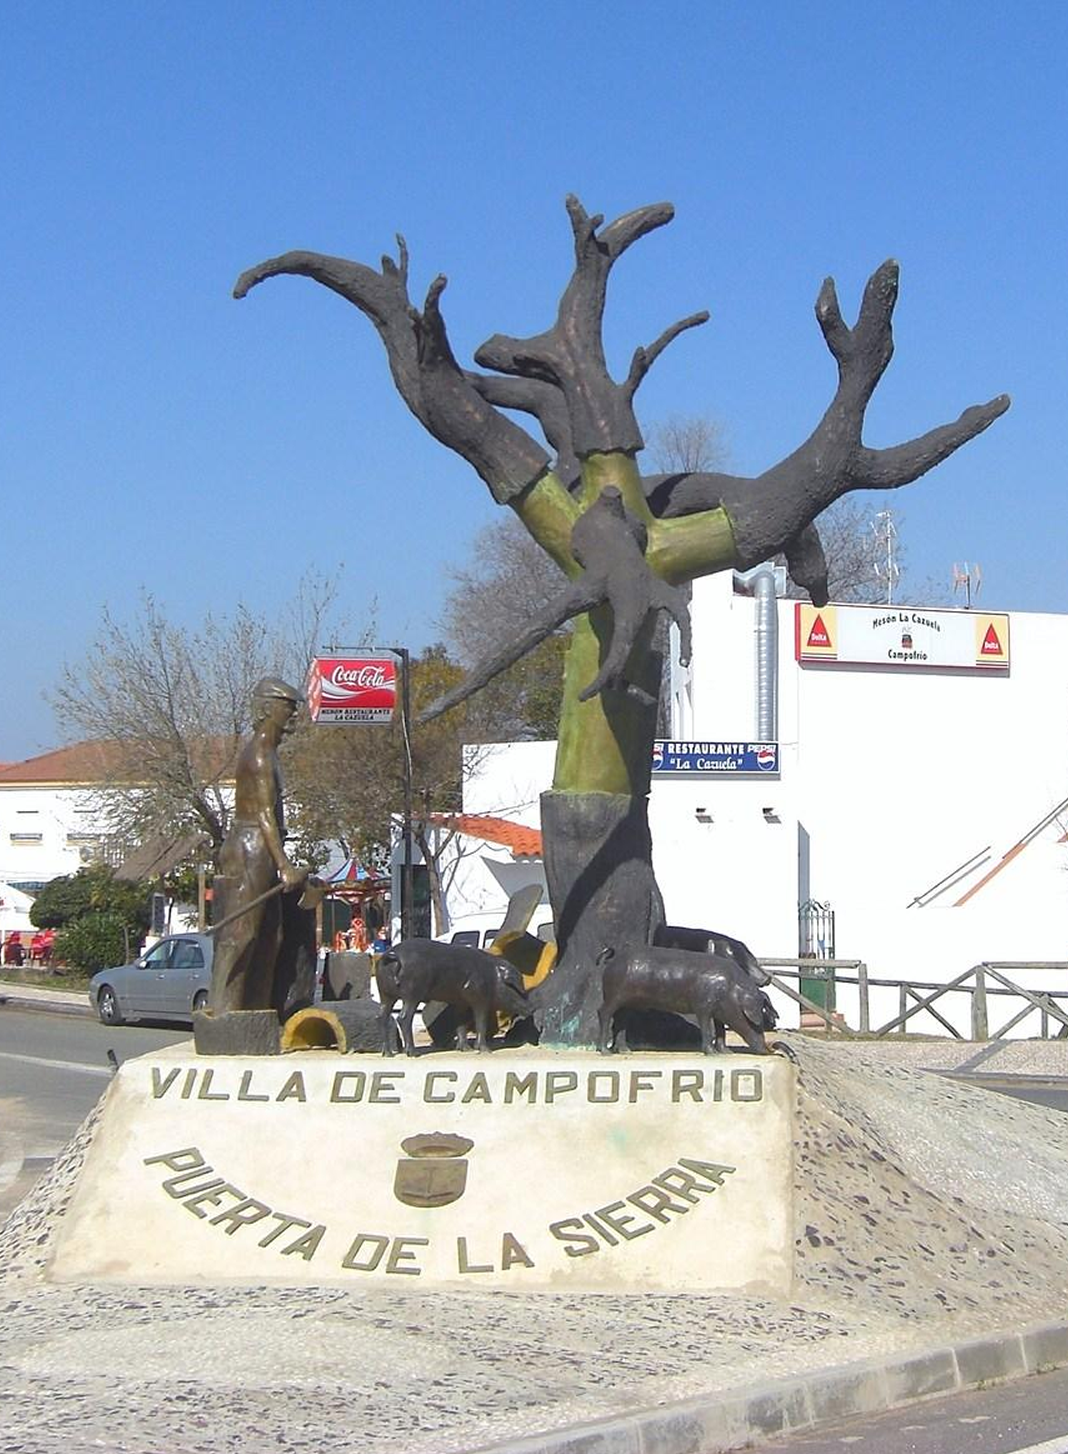 Campofrío (Huelva)